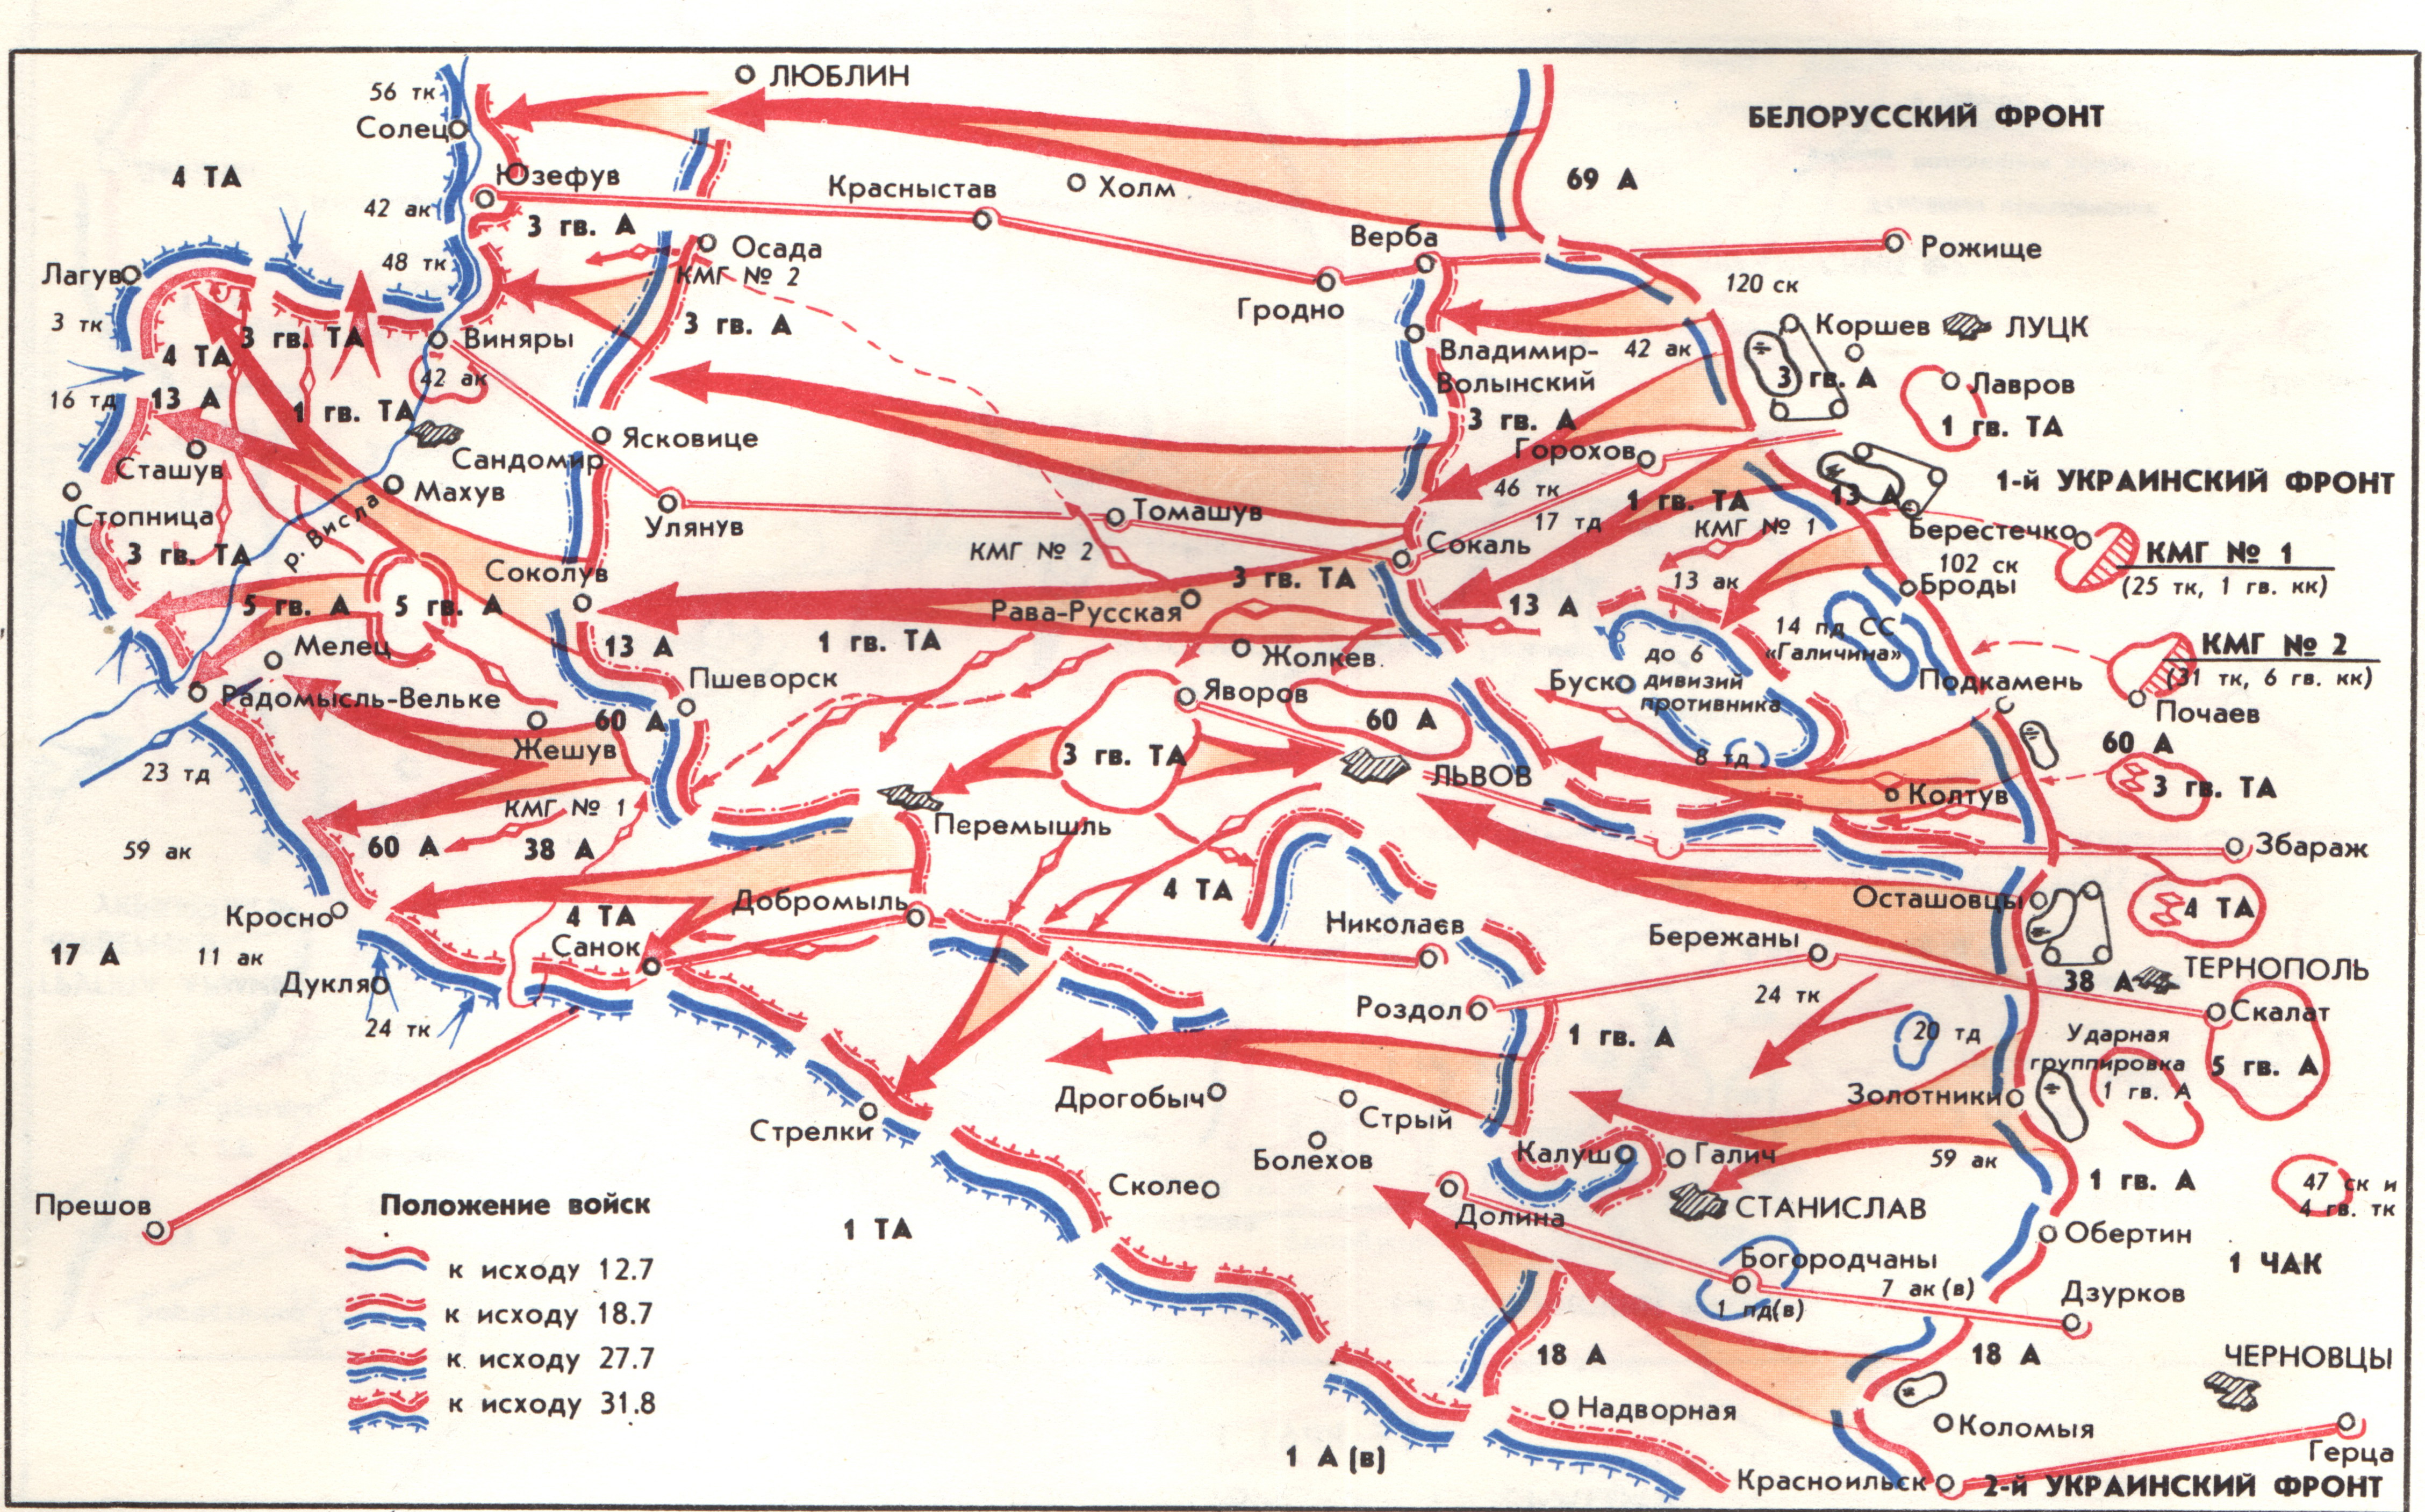 1 из фронтов великой отечественной войны. Львовско Сандомирская наступательная операция 1944 года. Львовско-Сандомирская операция карта. Львовско-Сандомирская операция (13 июля — 29 августа 1944). Карта Львовско-Сандомирская операция 1944.